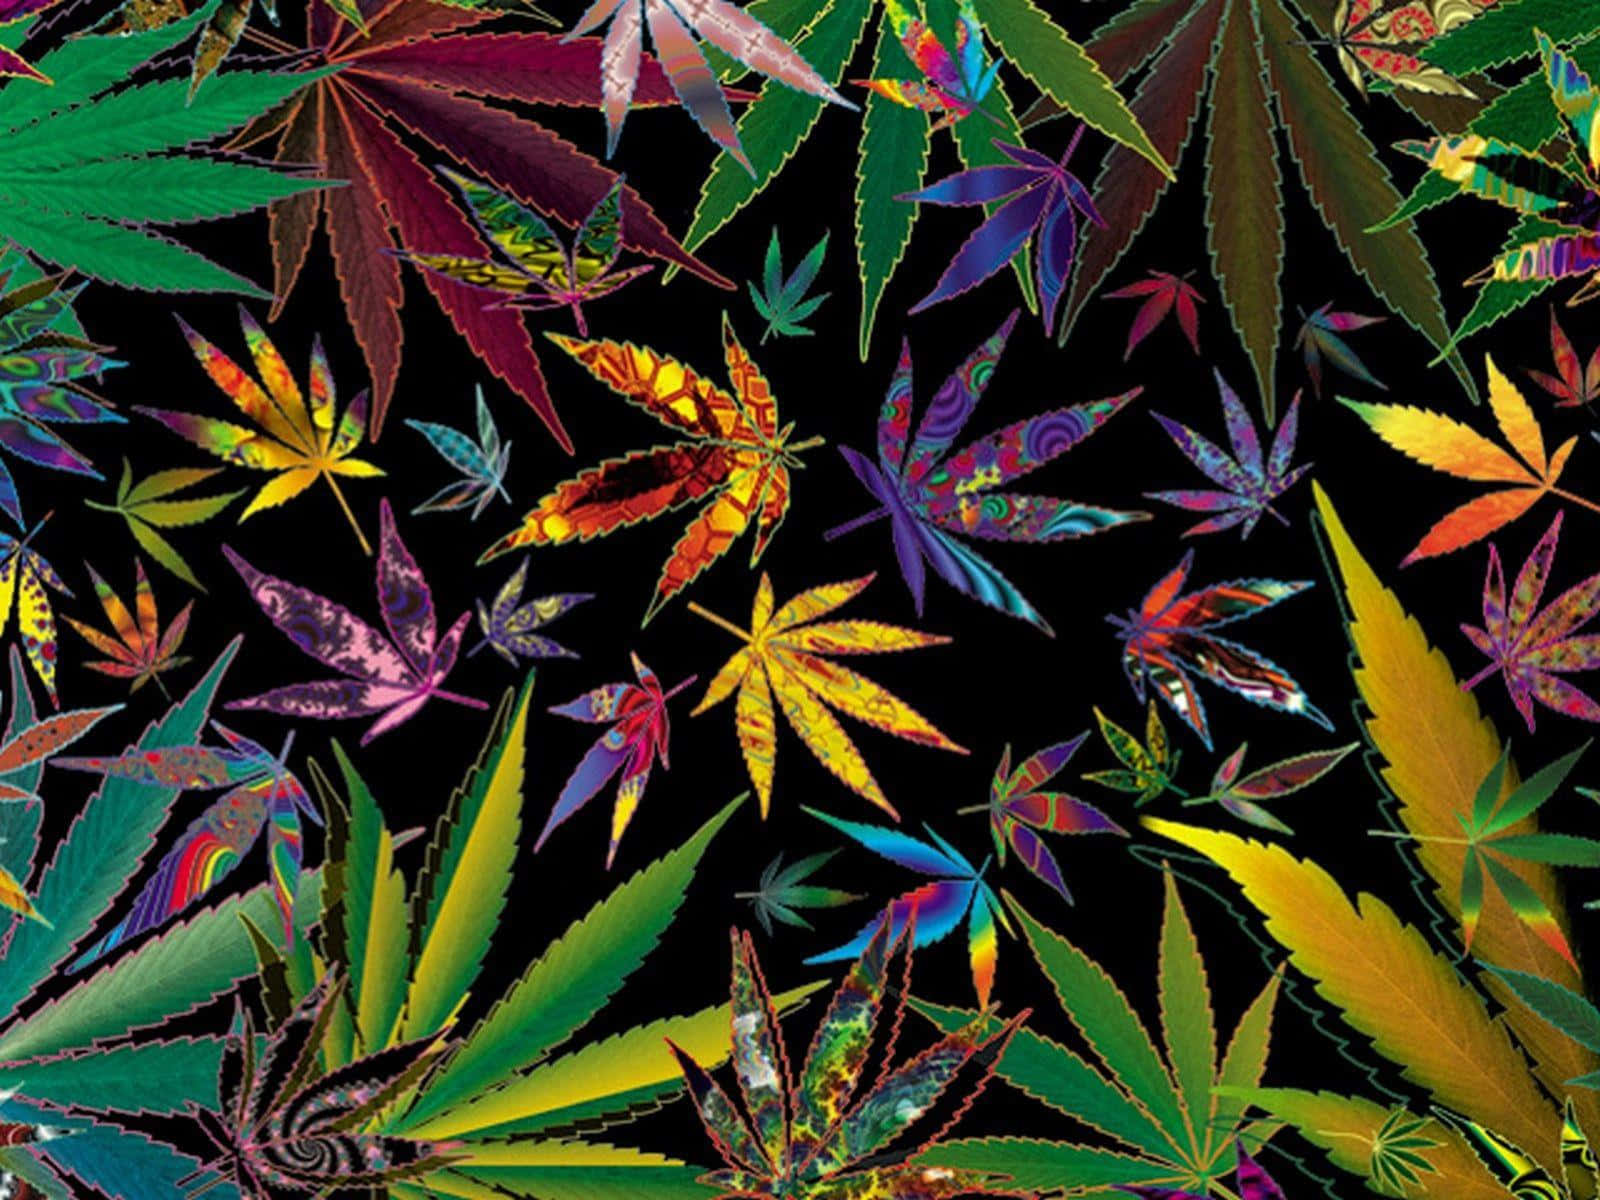 Nimmeine Pause Und Genieße Das Glück Von Cannabis.